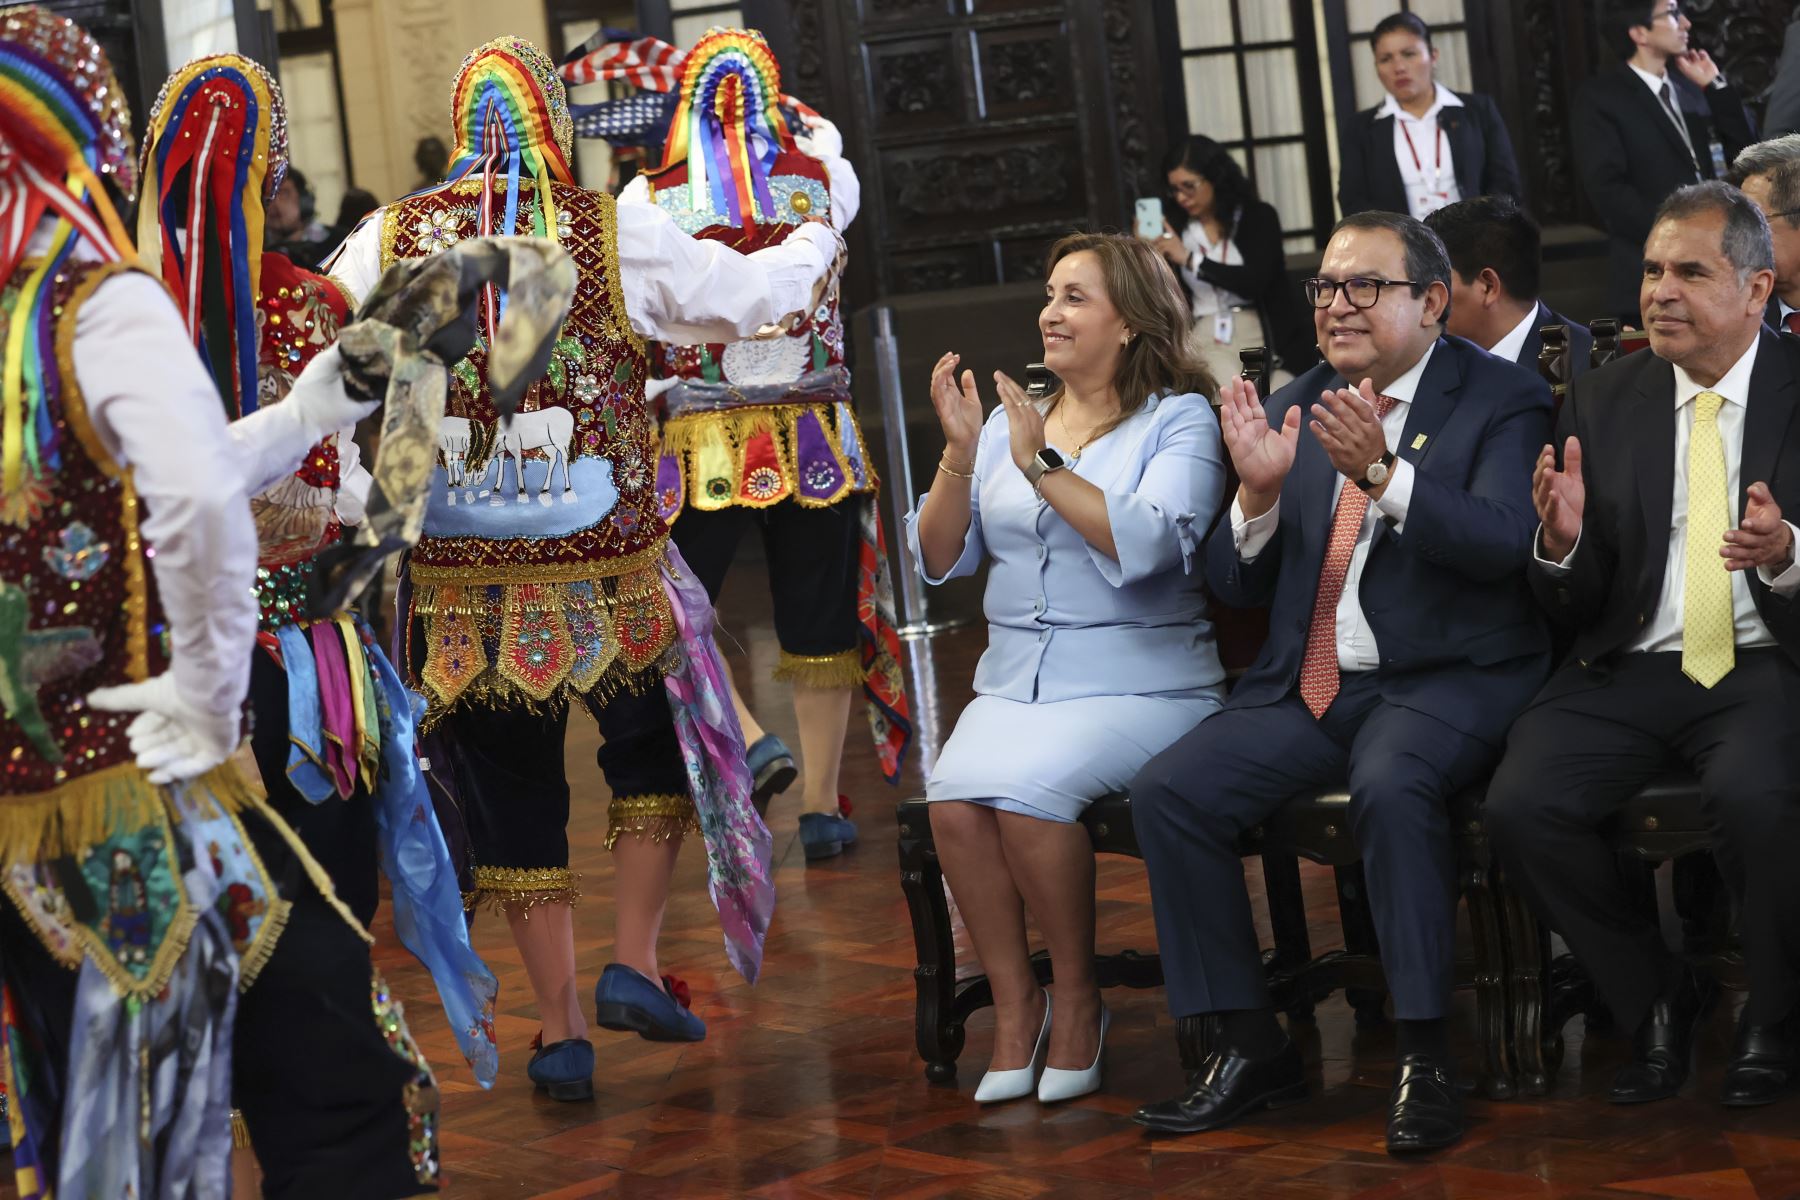 La presidenta Dina Boluarte participó en la ceremonia de reconocimiento de los "Mejores Pueblos Turísticos del Mundo" otorgado por la Organización Mundial del Turismo, siendo el Perú uno de los países más distinguidos entre las 60 naciones participantes.
Foto: ANDINA/Presidencia Perú